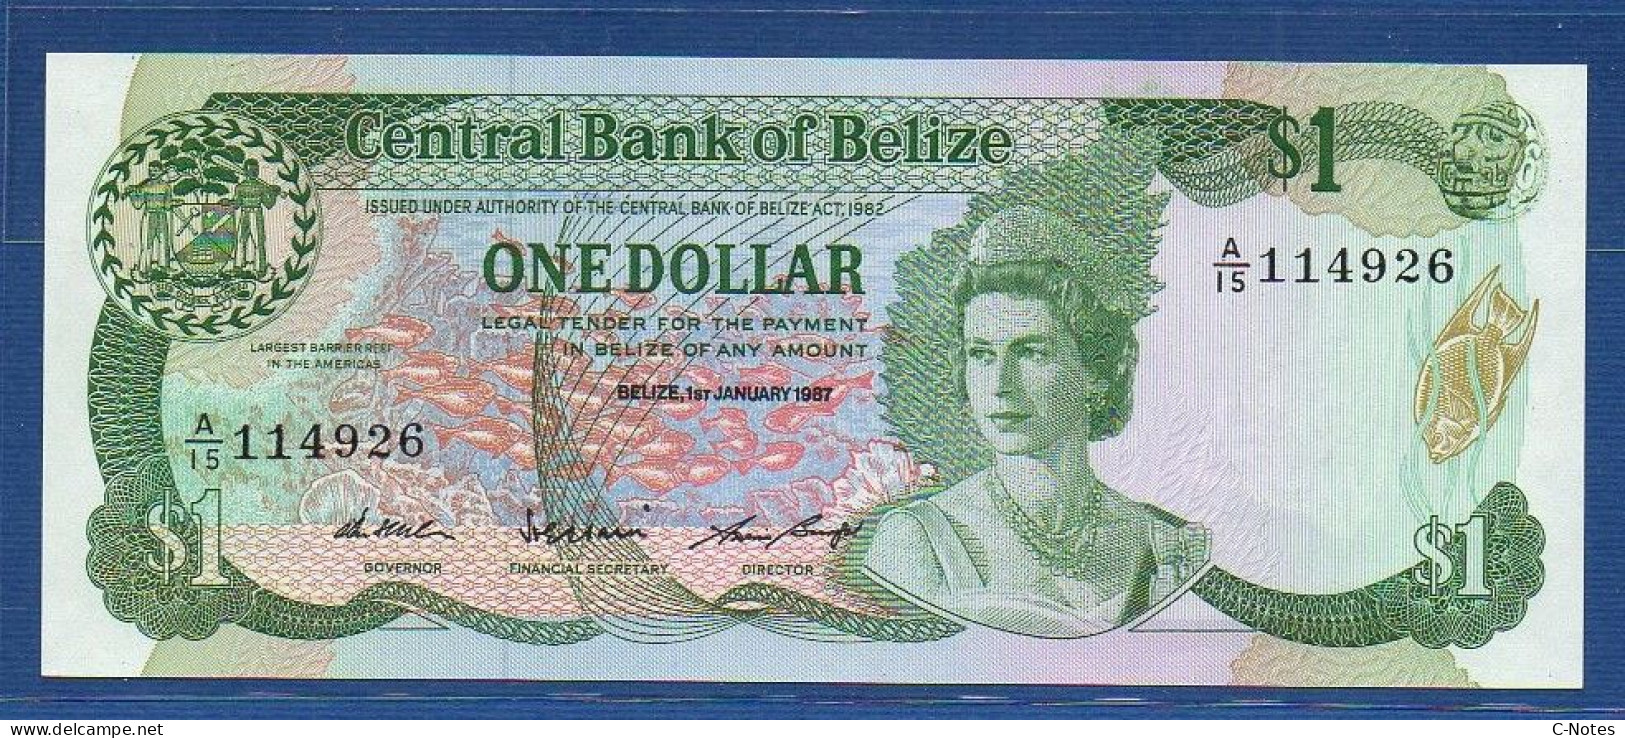 BELIZE - P.46c – 1 Dollar 1987 UNC, S/n A/15 114926 - Belice